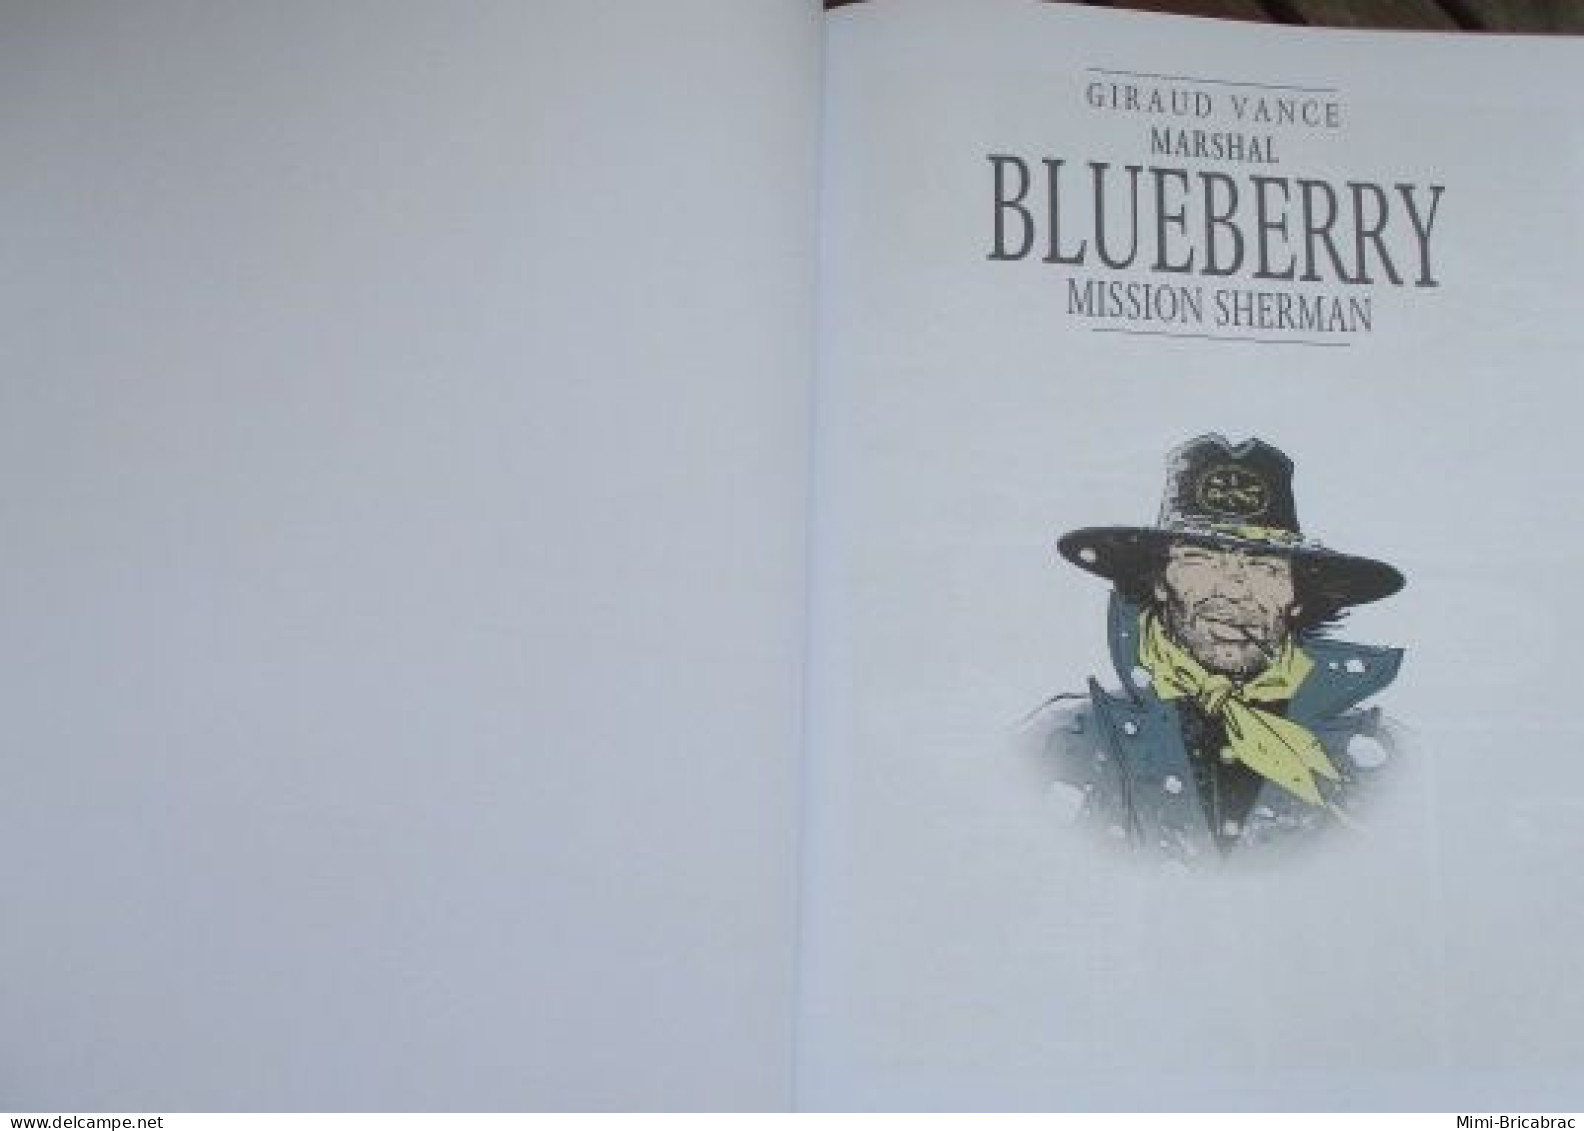 MINI20 Edition INTEGRALE BLUEBERRY De 2014 MISSION SHERMAN Av Suppl SUR LA PISTE DE BLUEBERRY Excellent état - Blueberry